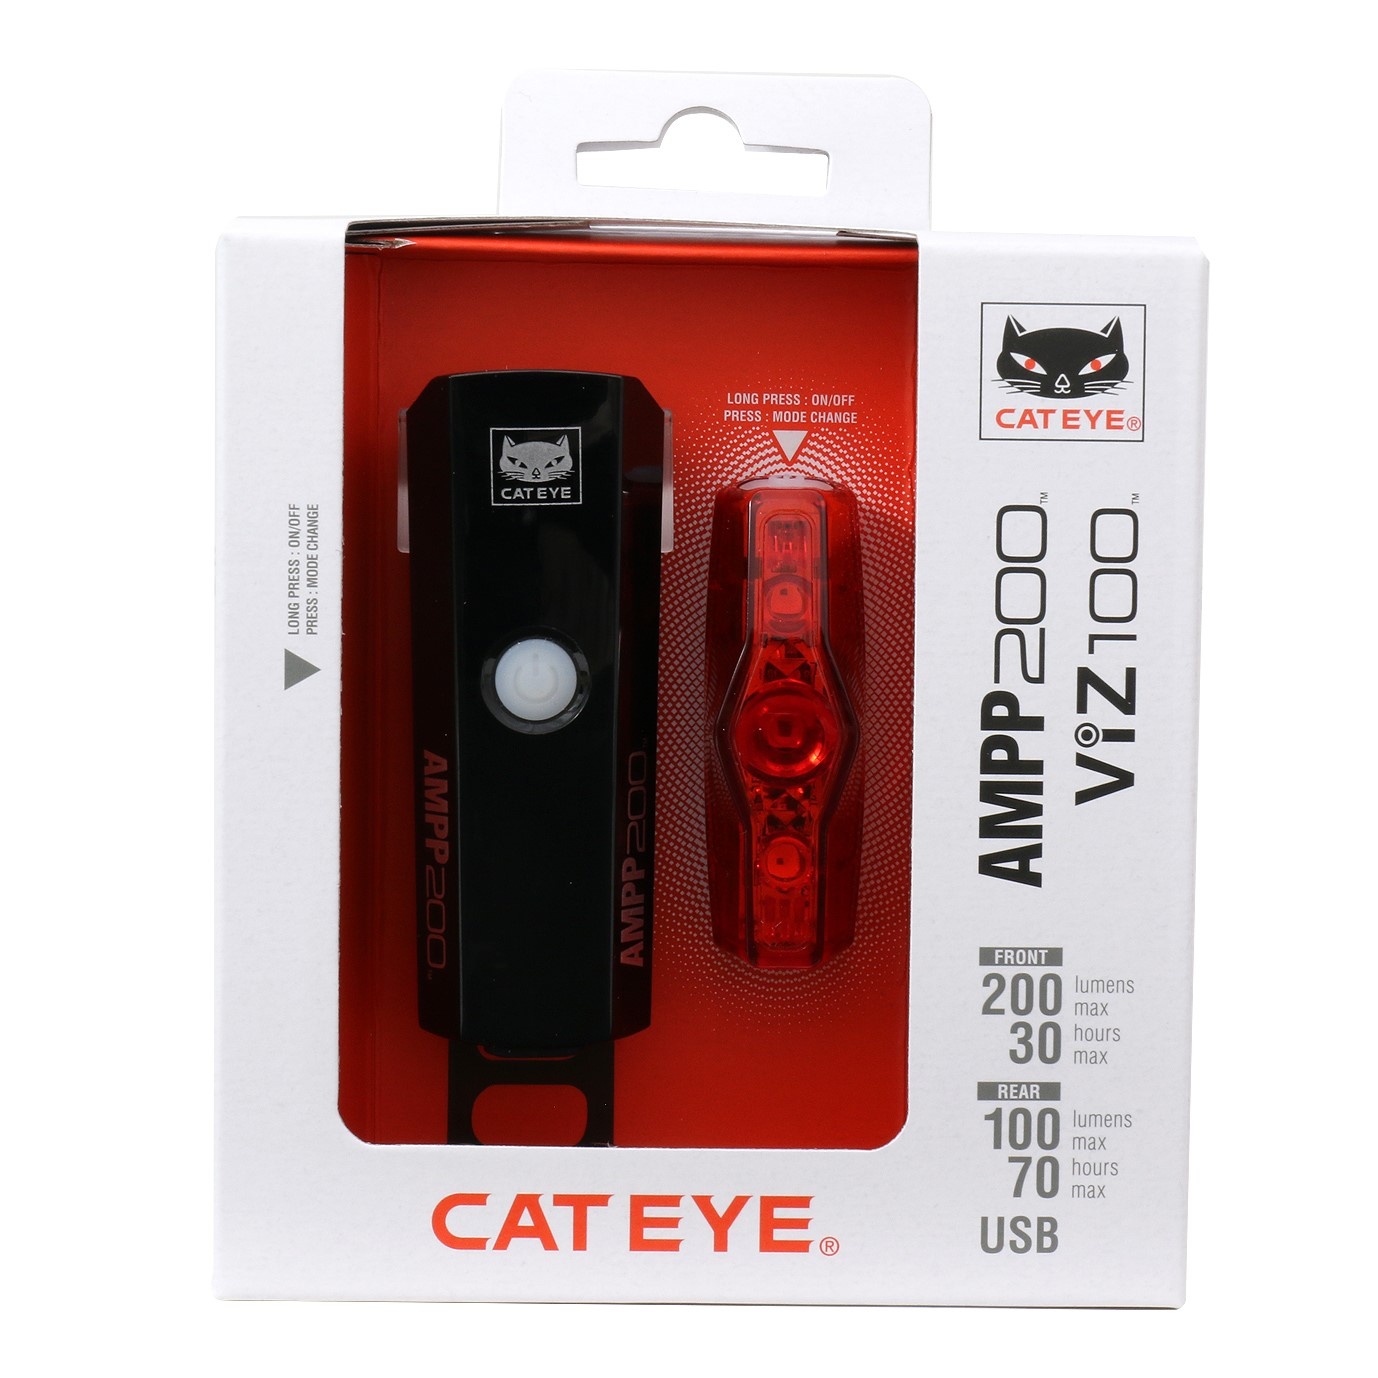 Tilbehør - Cykellygter - CatEye Lygtesæt - AMPP200/ViZ100 USB opl. - 200/100 lumen